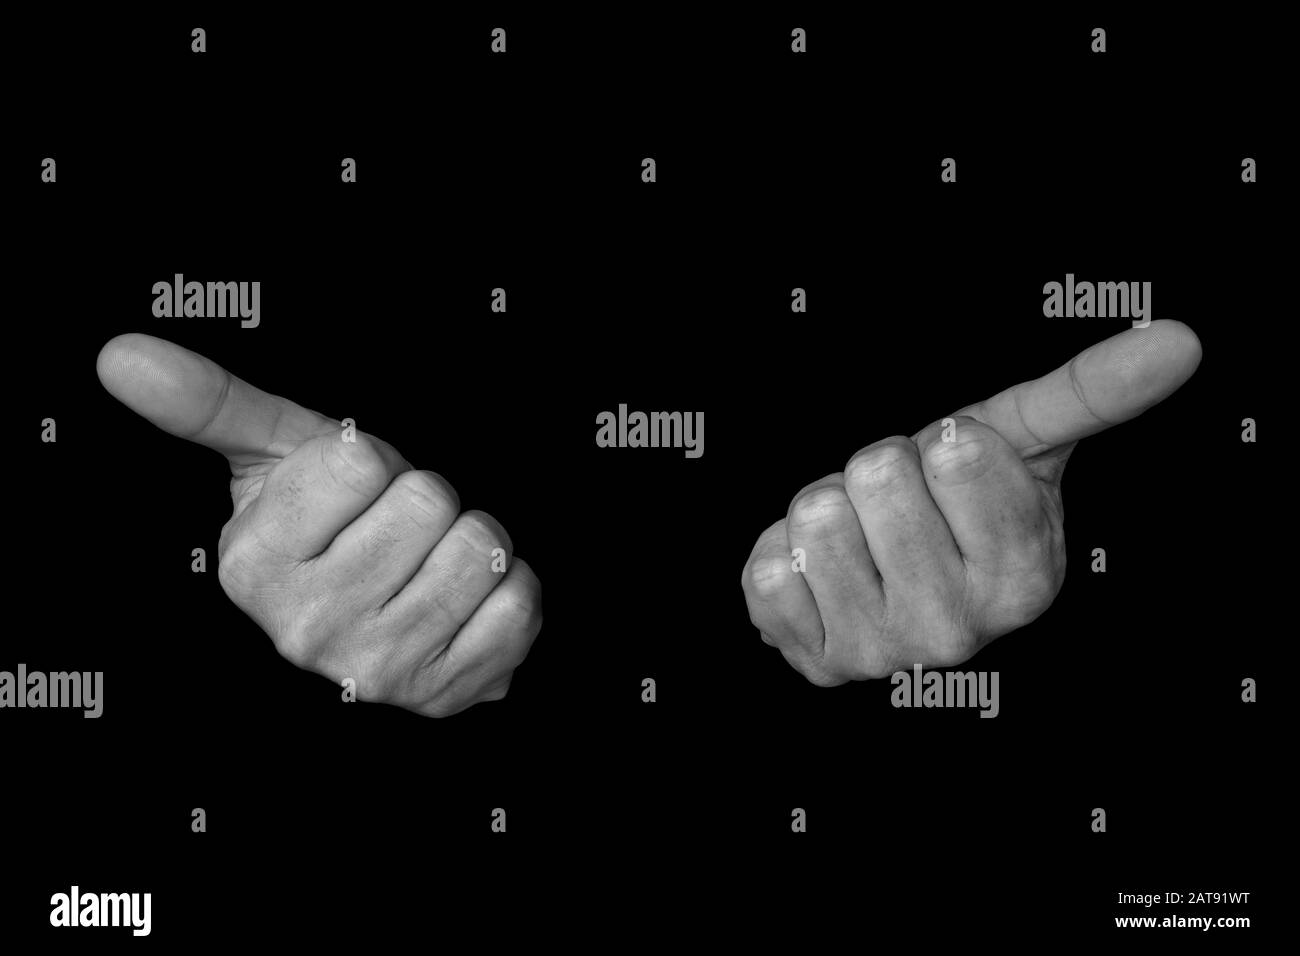 3 di 3 immagini che mostrano la sequenza per LA parola SALUTE nel linguaggio dei segni britannico su uno sfondo nero isolato Foto Stock